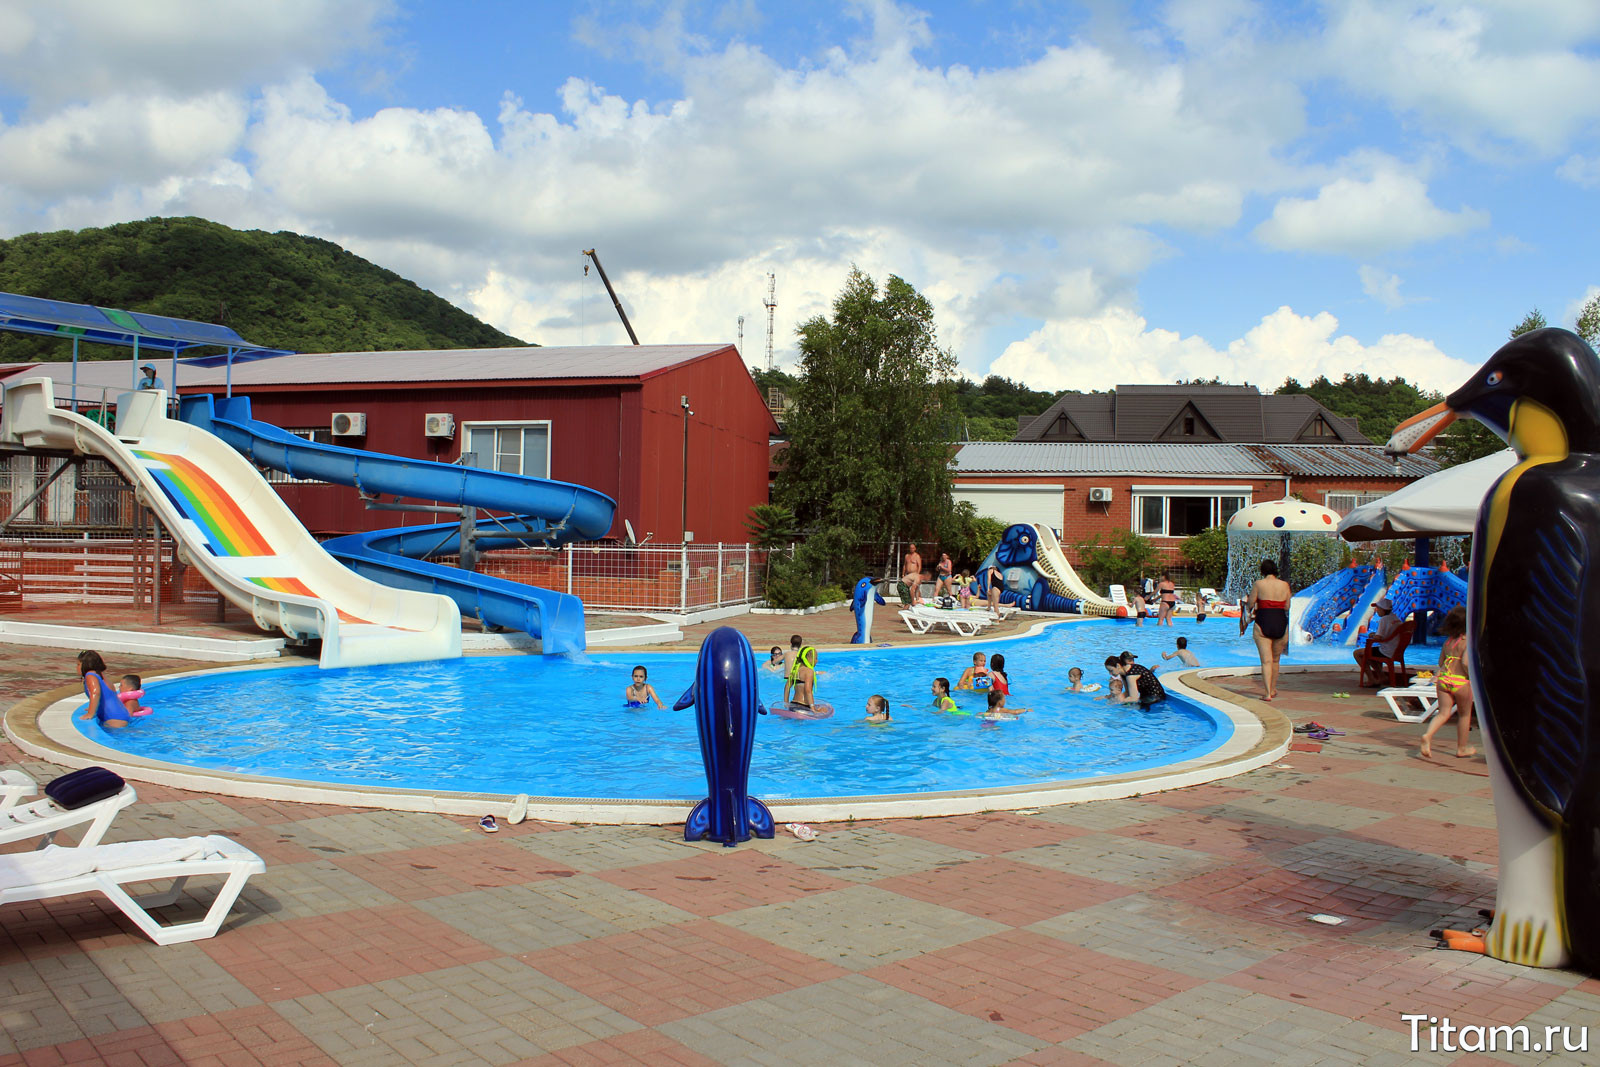 Аквапарк "Лето" в Ольгинке. Детская зона